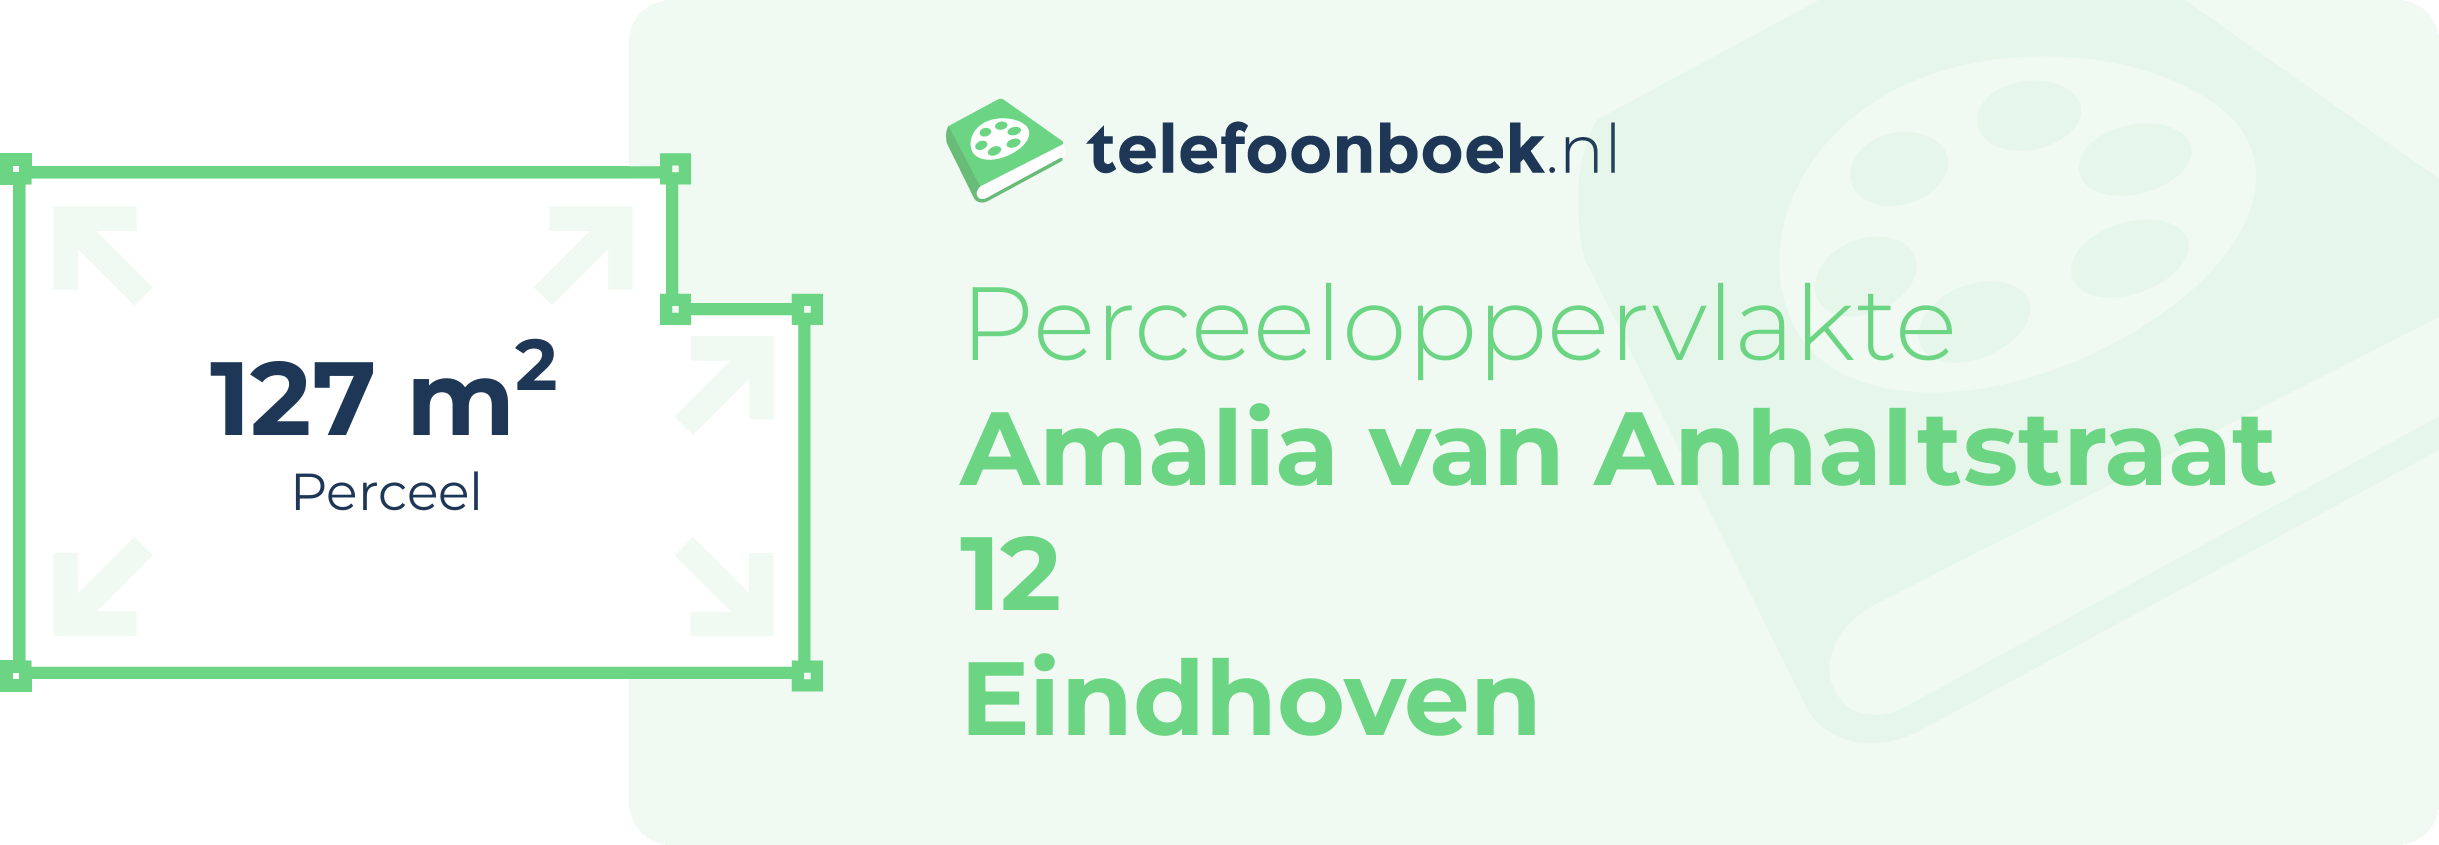 Perceeloppervlakte Amalia Van Anhaltstraat 12 Eindhoven